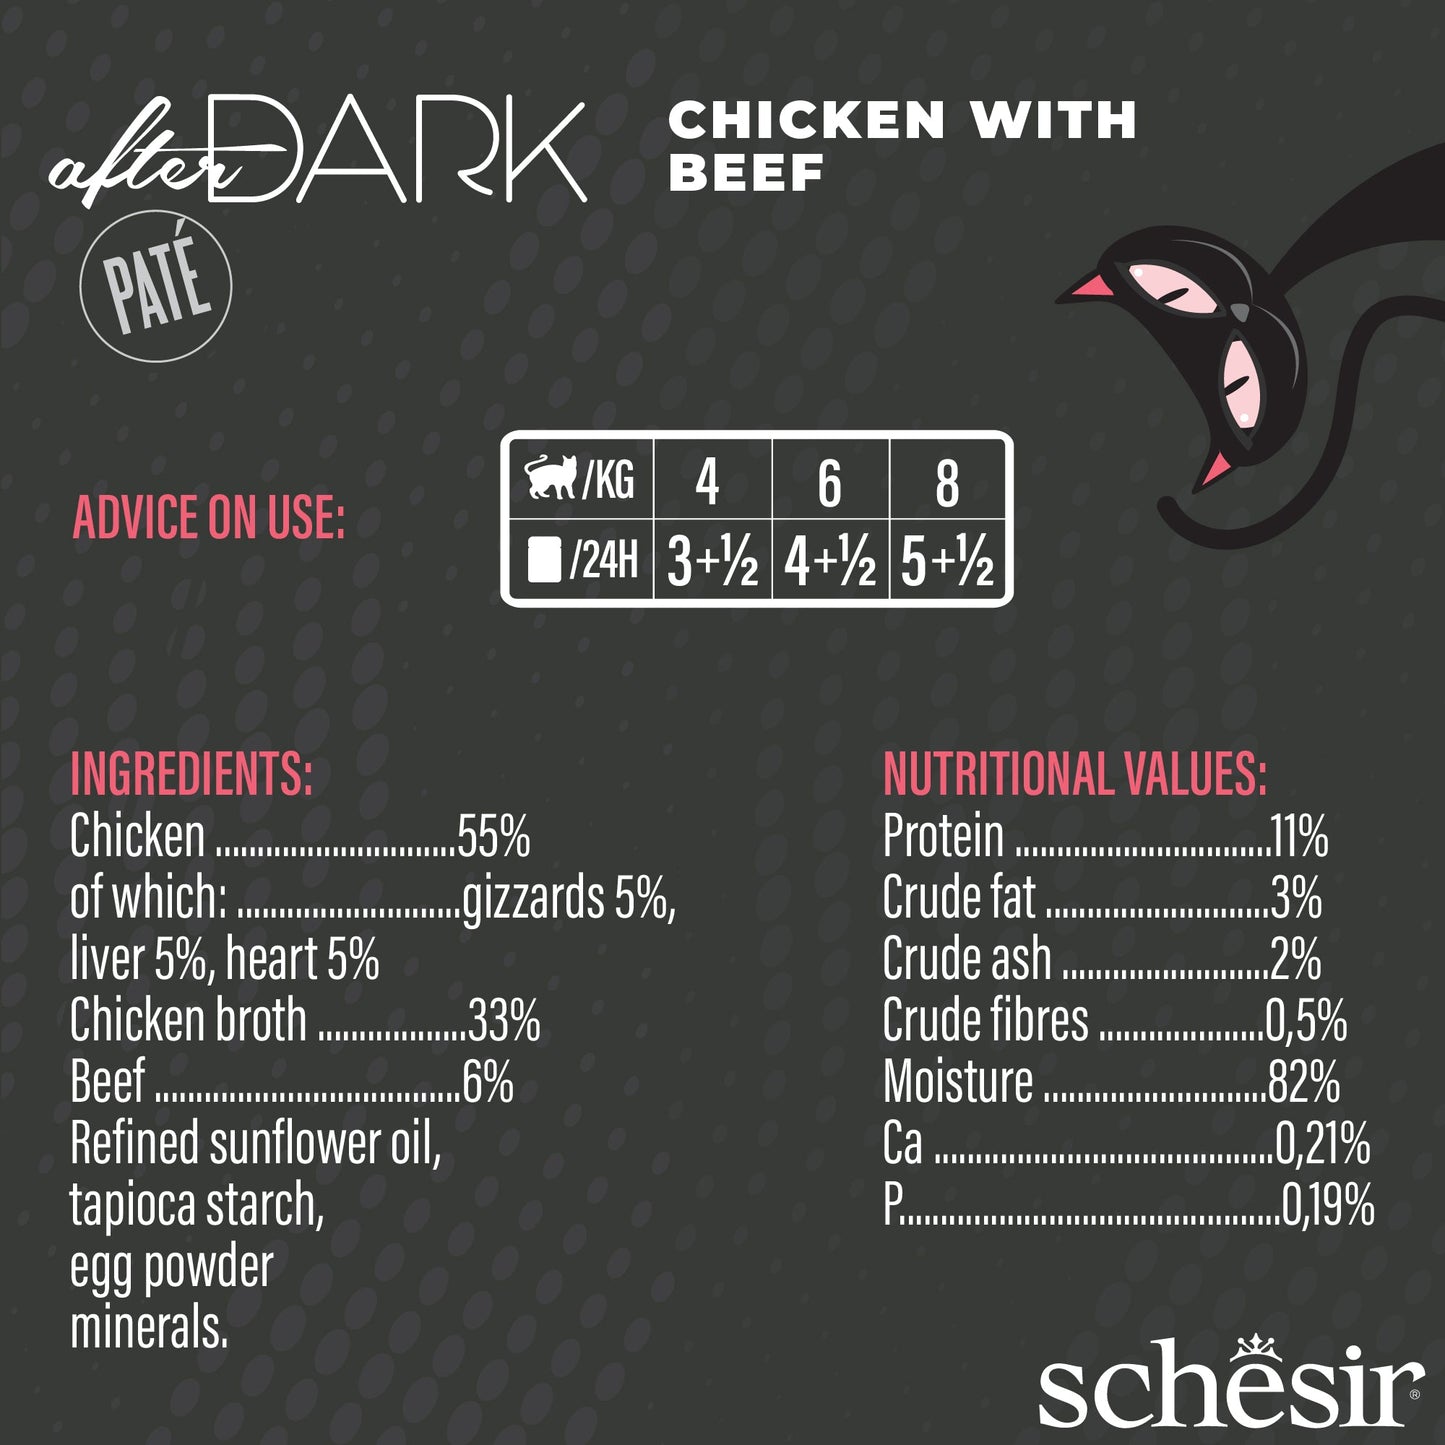 (Carton of 12) Schesir After Dark Pate - Chicken with Beef, 80g